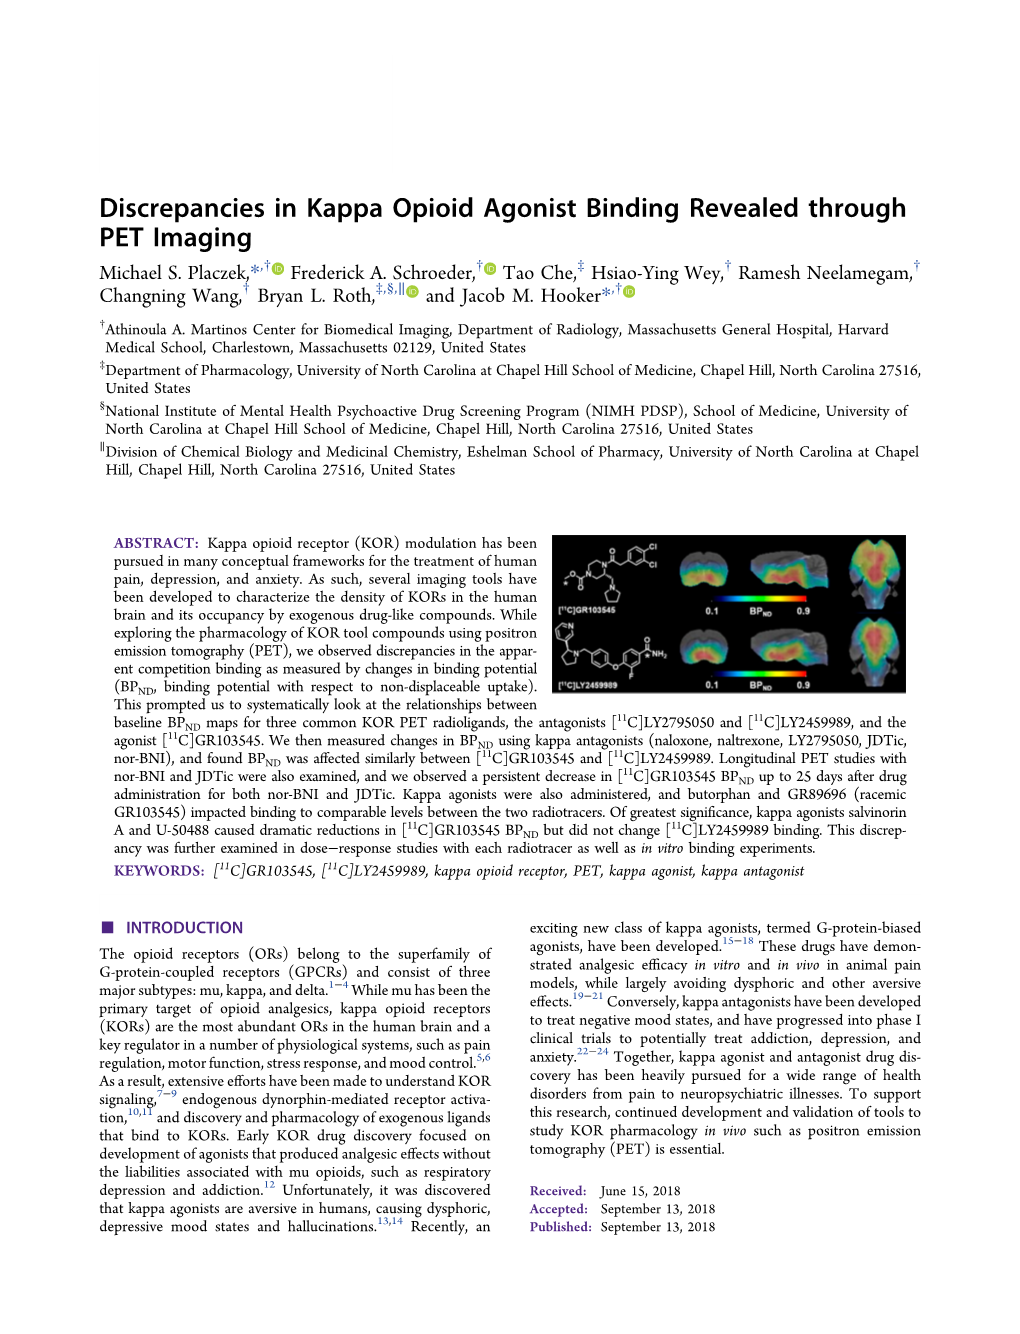 Discrepancies in Kappa Opioid Agonist Binding Revealed Through PET Imaging † † ‡ † † Michael S